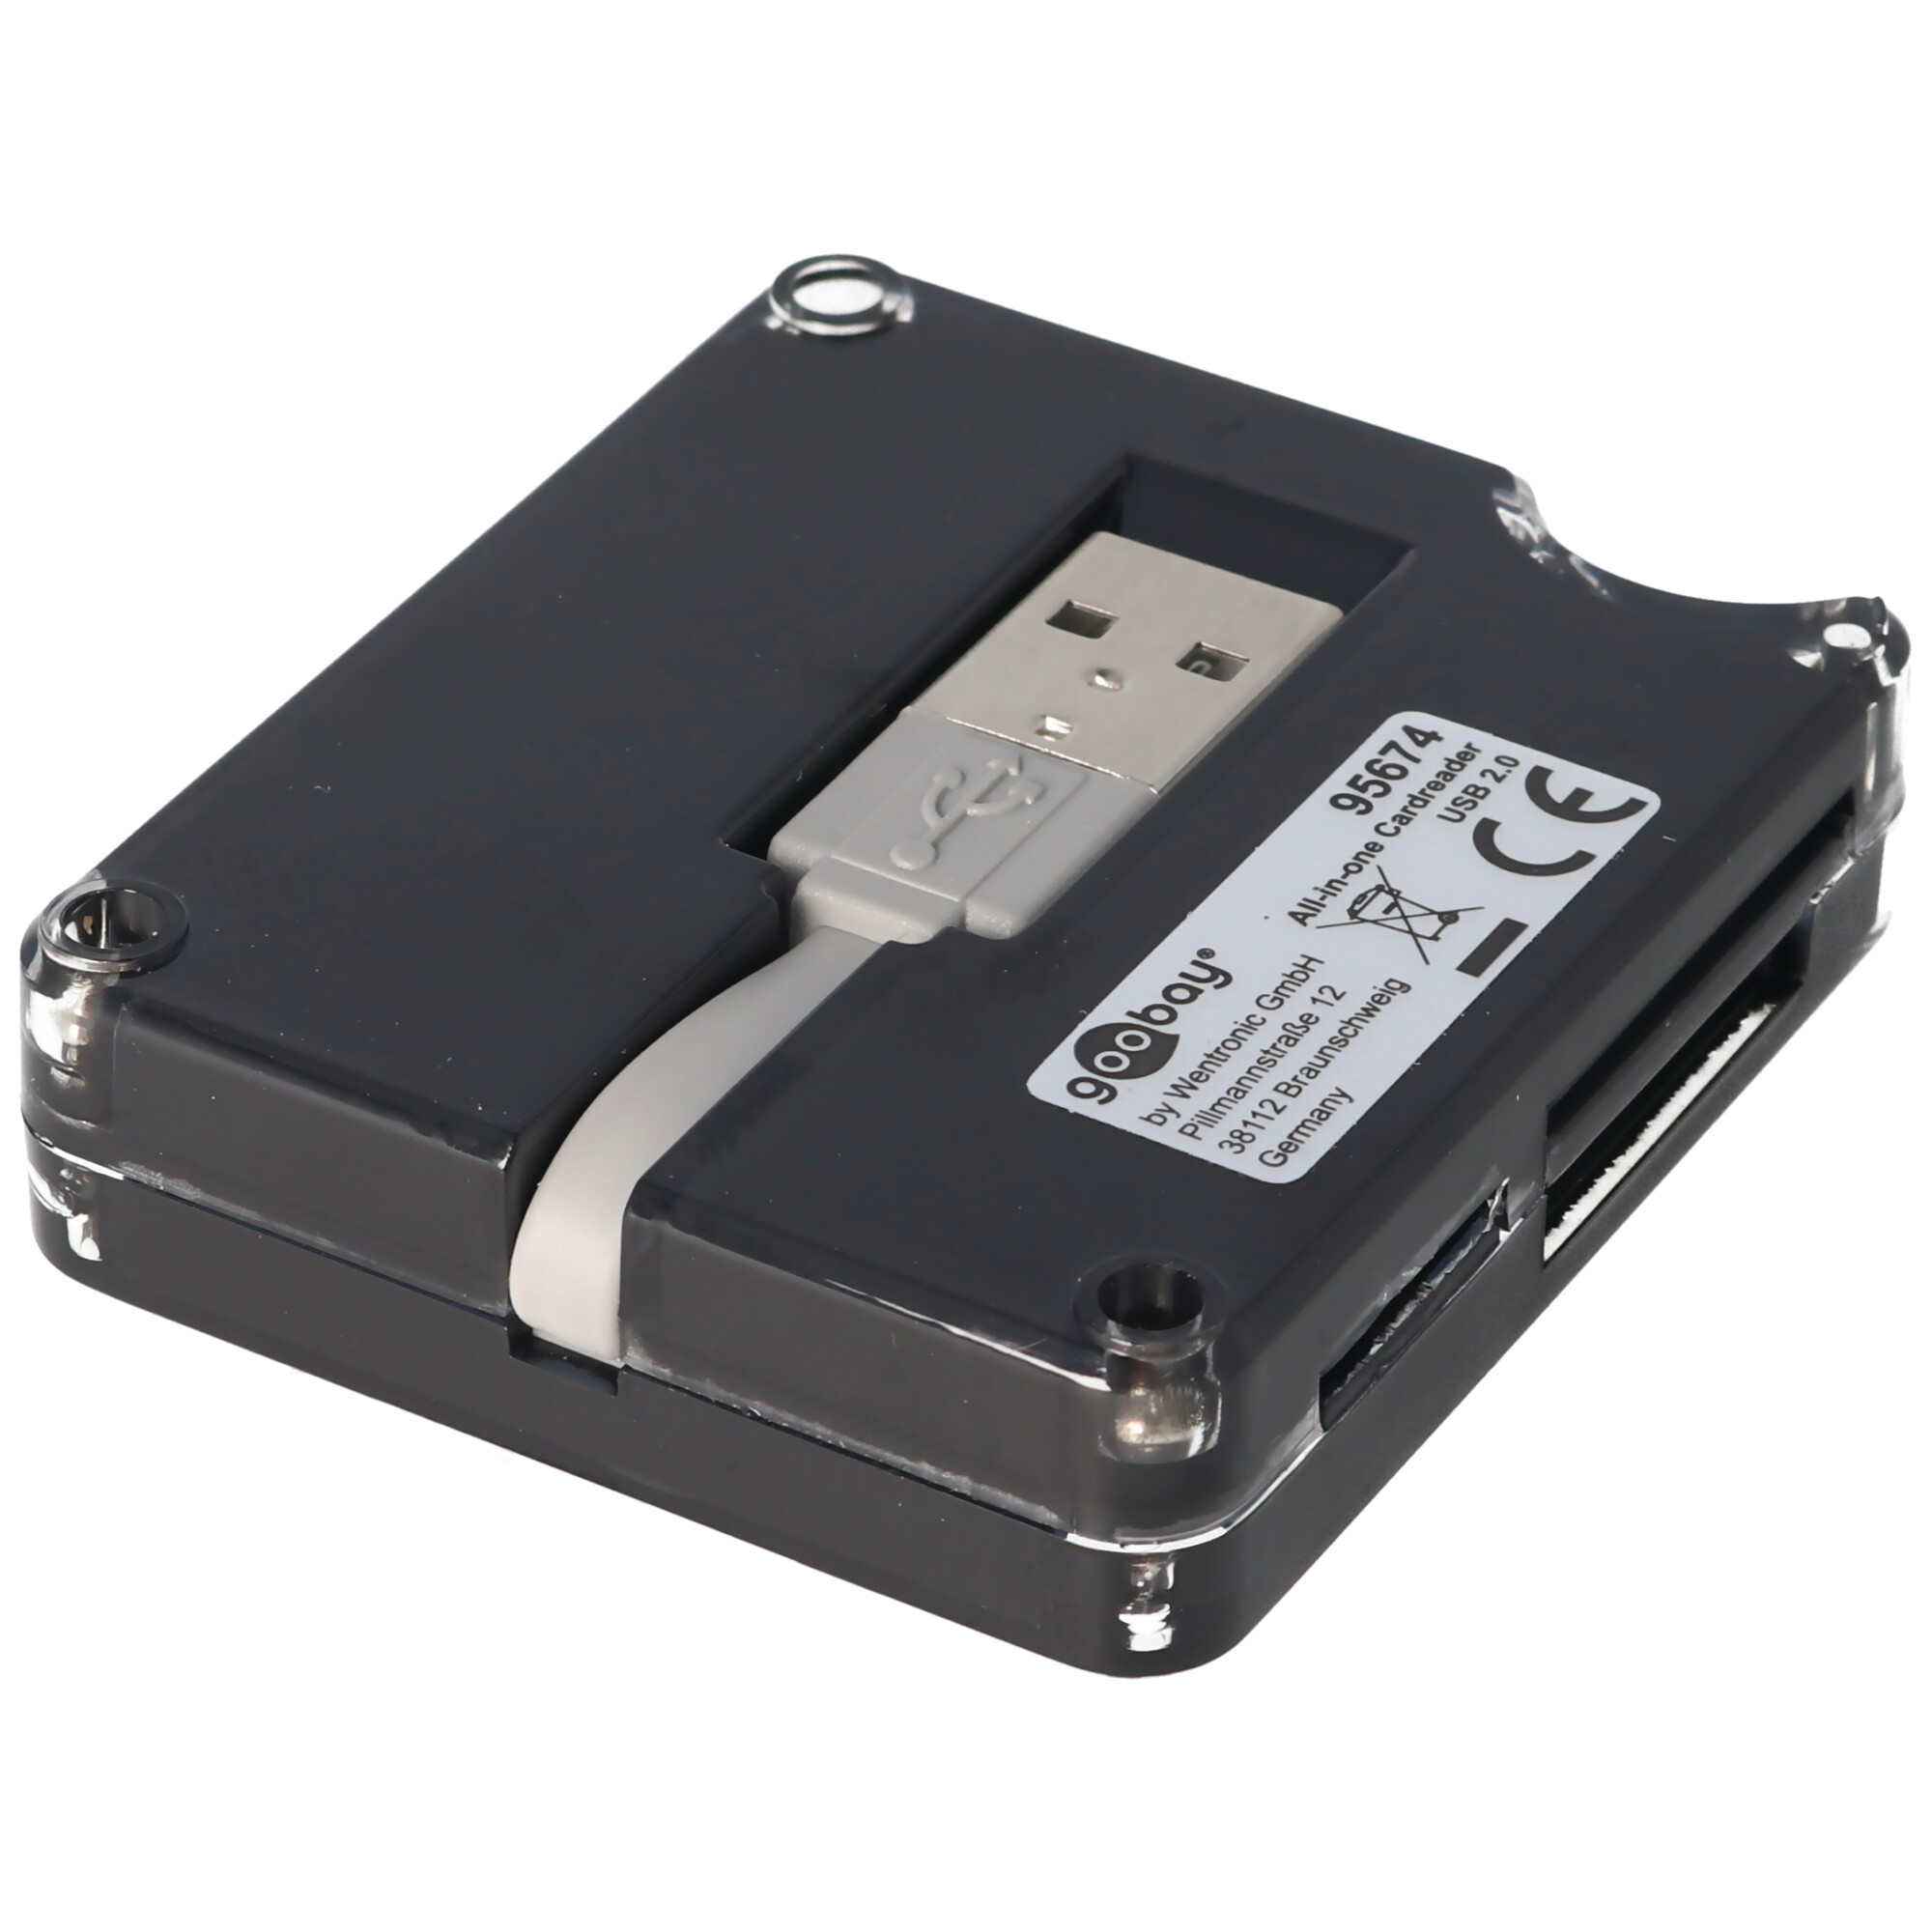 USB Kartenlesegerät All-in-one für SD, SDHC, MiniSD, MMC, CF, XD Cardreader